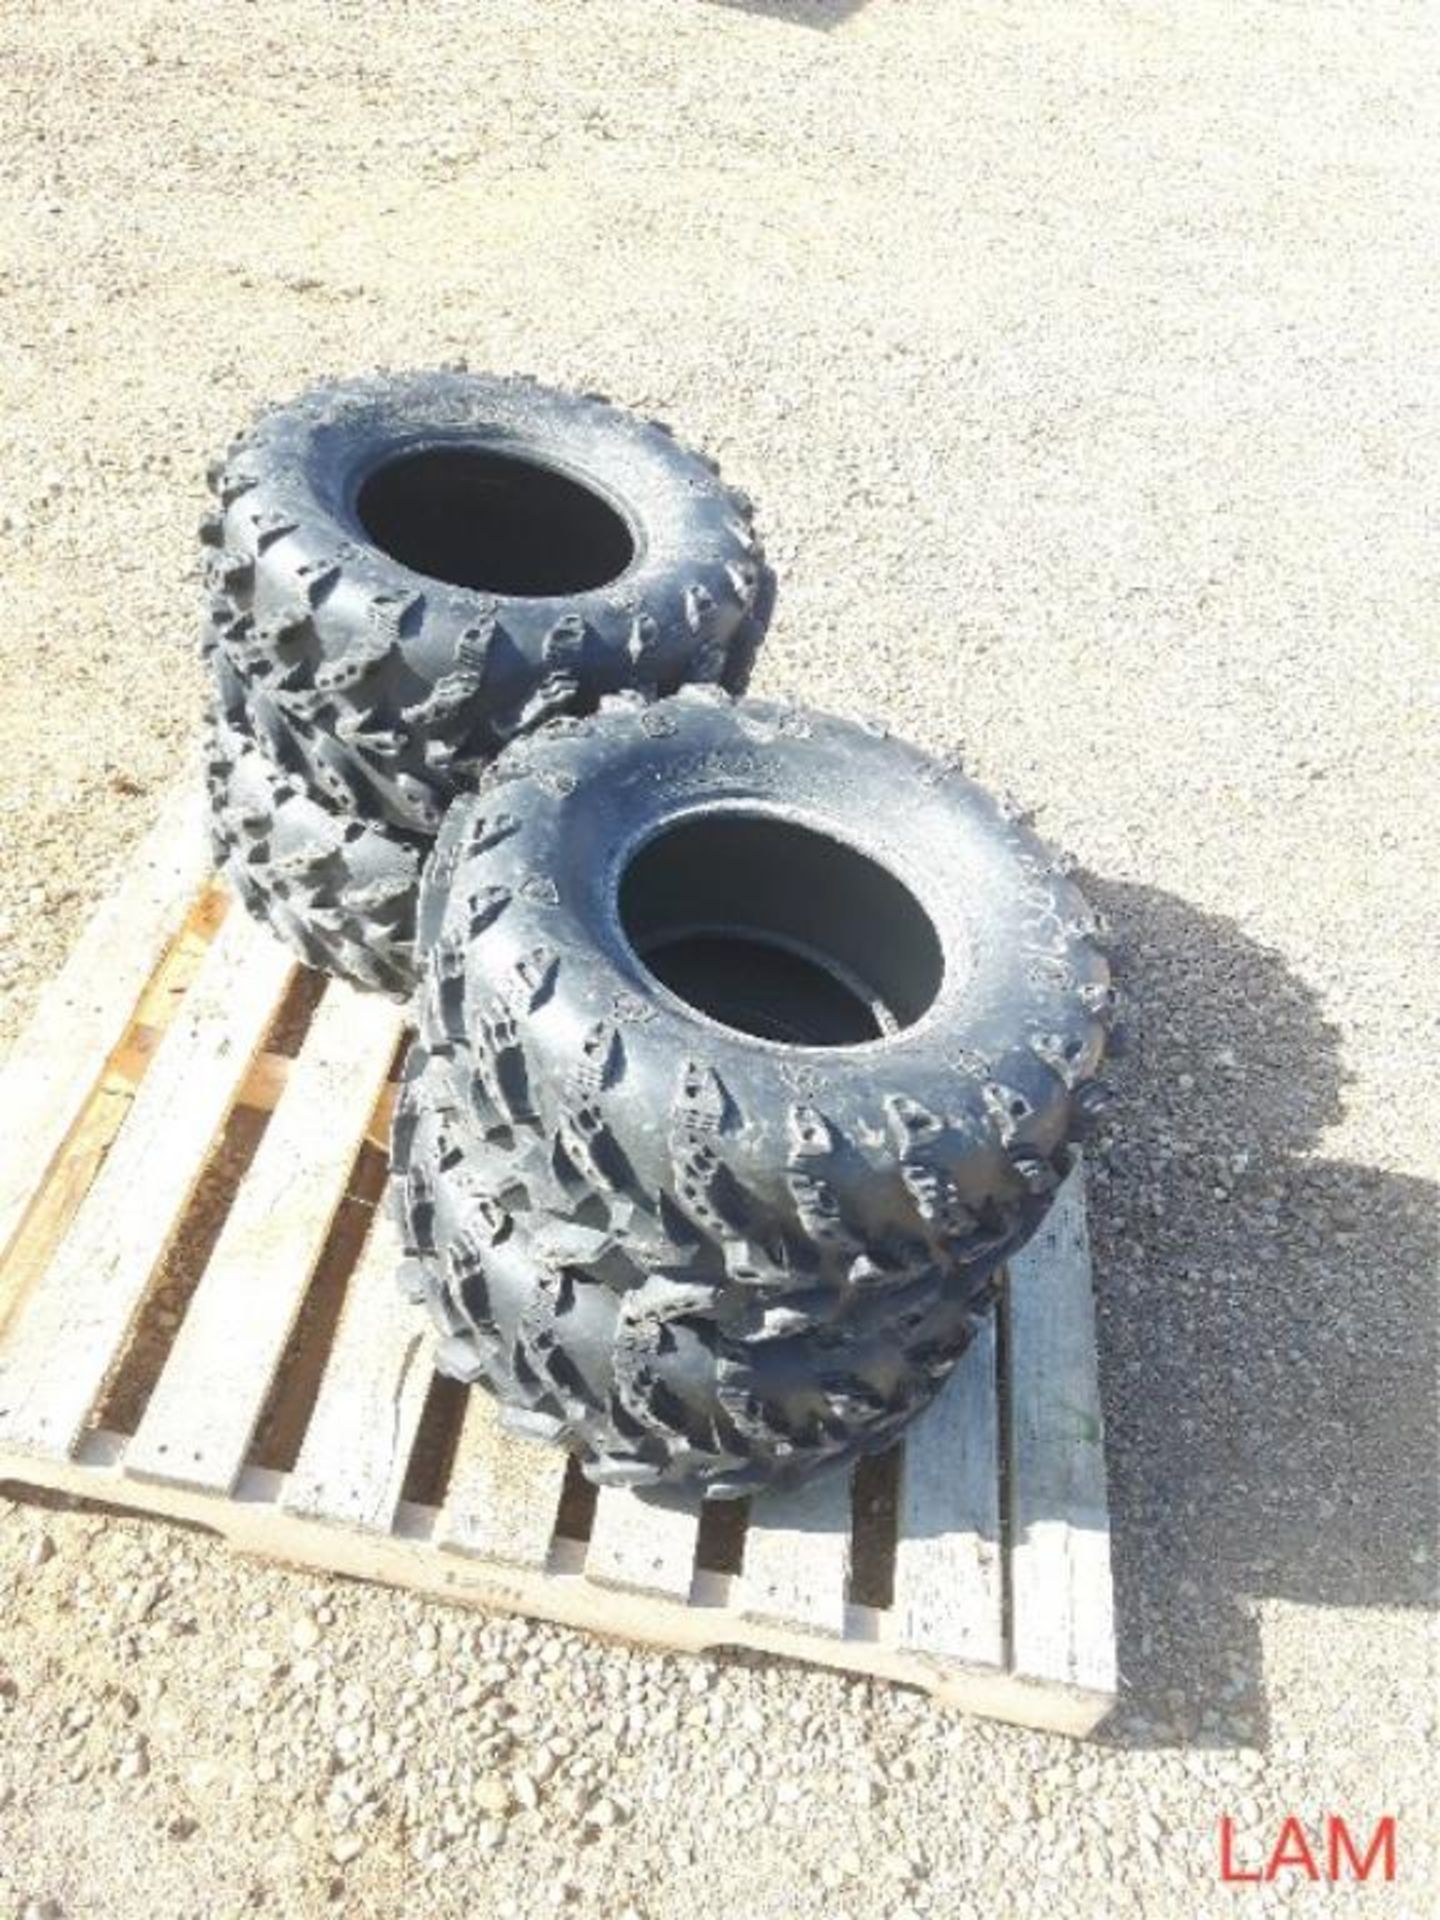 Set of 4 Swamp Lite Quad Tires